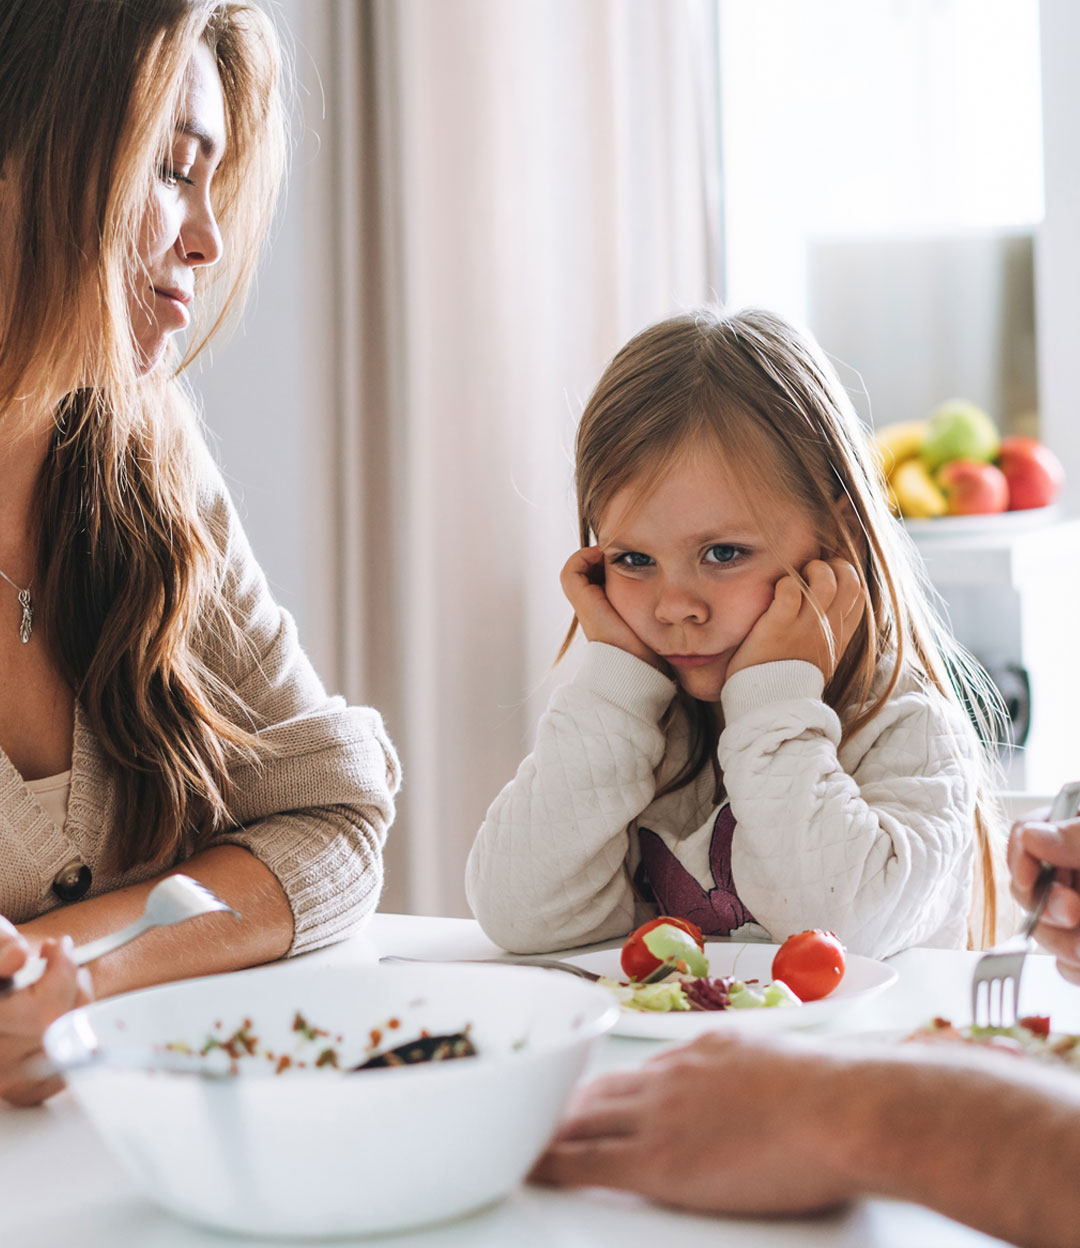 Votre enfant refuse de manger? Découvrez pourquoi et comment éviter de négocier! 